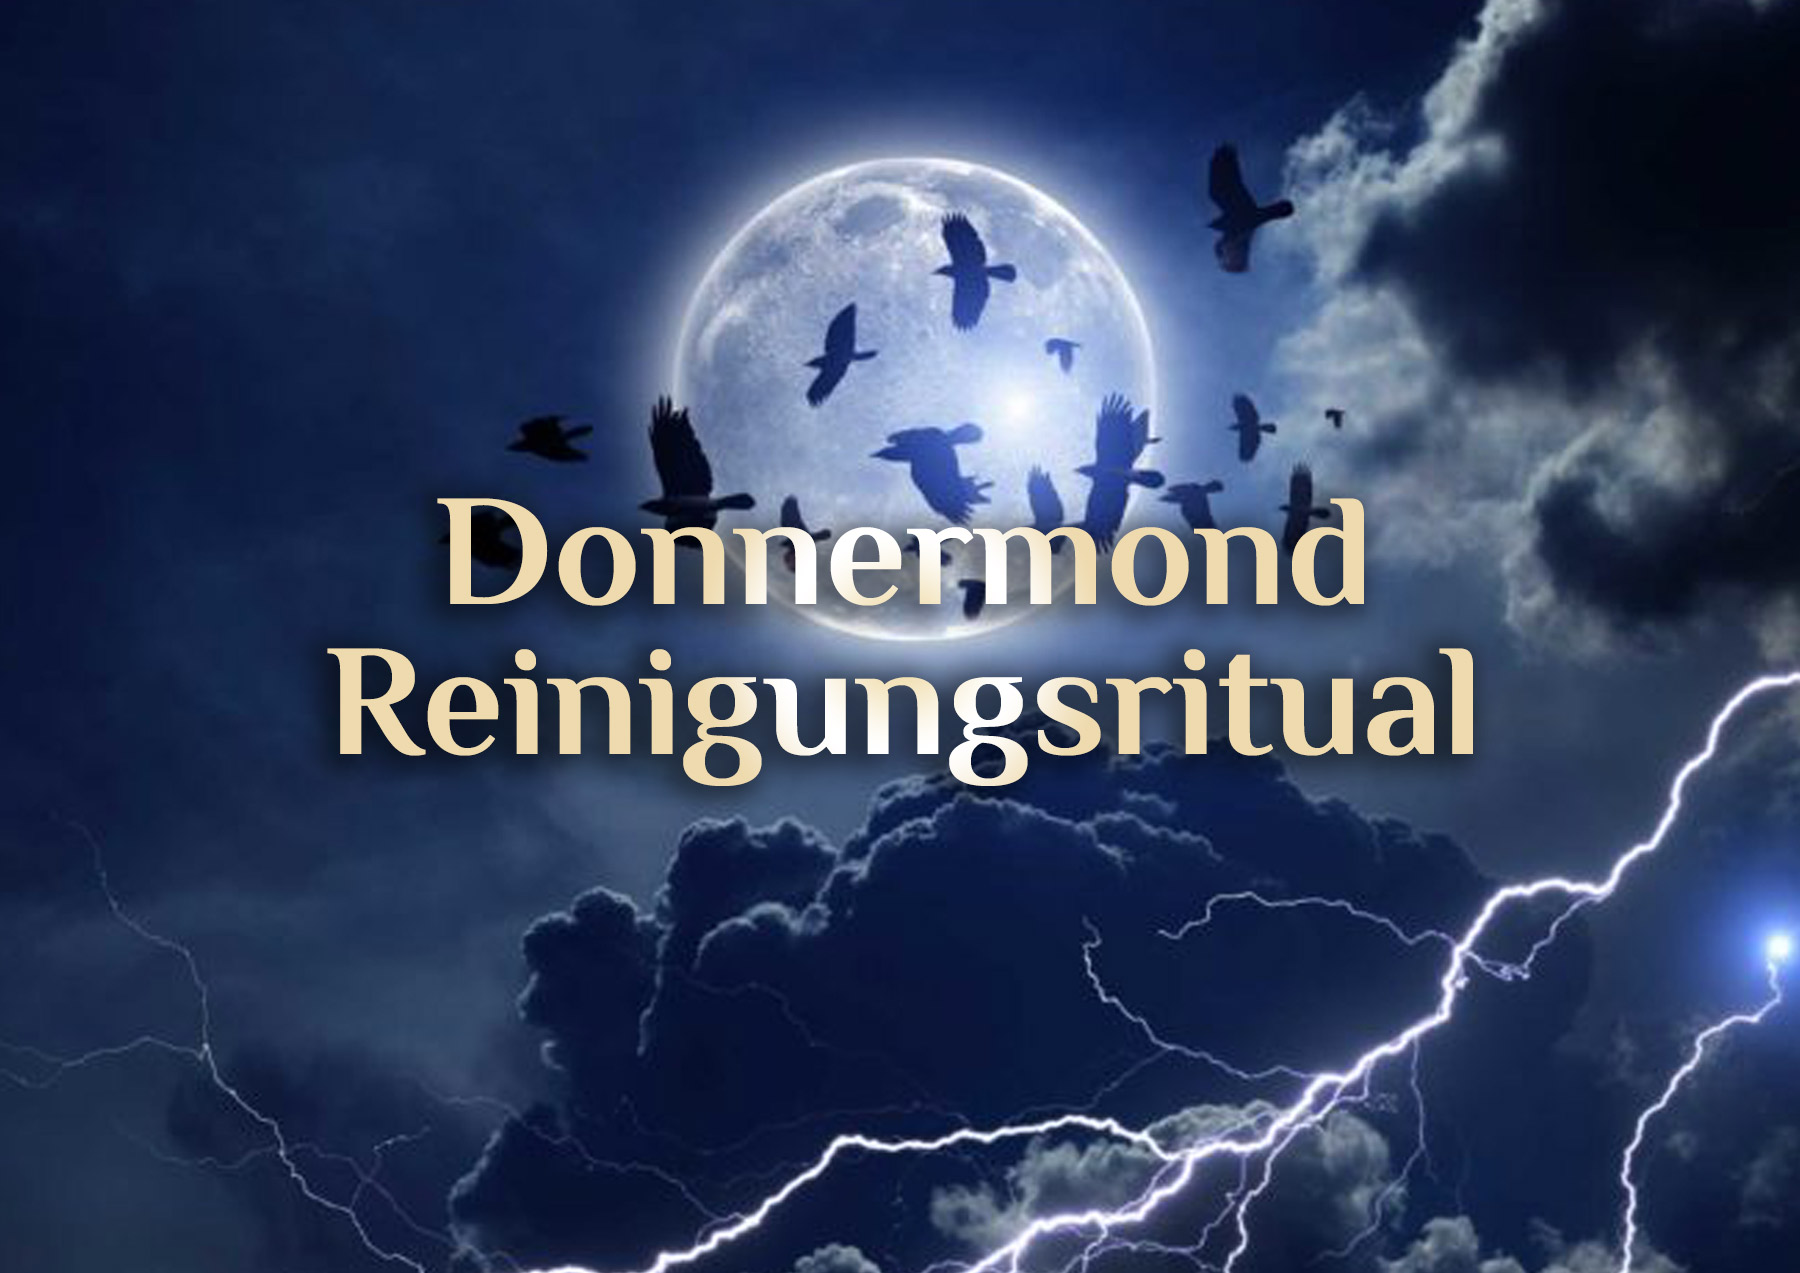 Vollmond Reinigungsritual ⛈️ Donnermond Reinigungsritual 🌕 Juli Vollmond Ritual